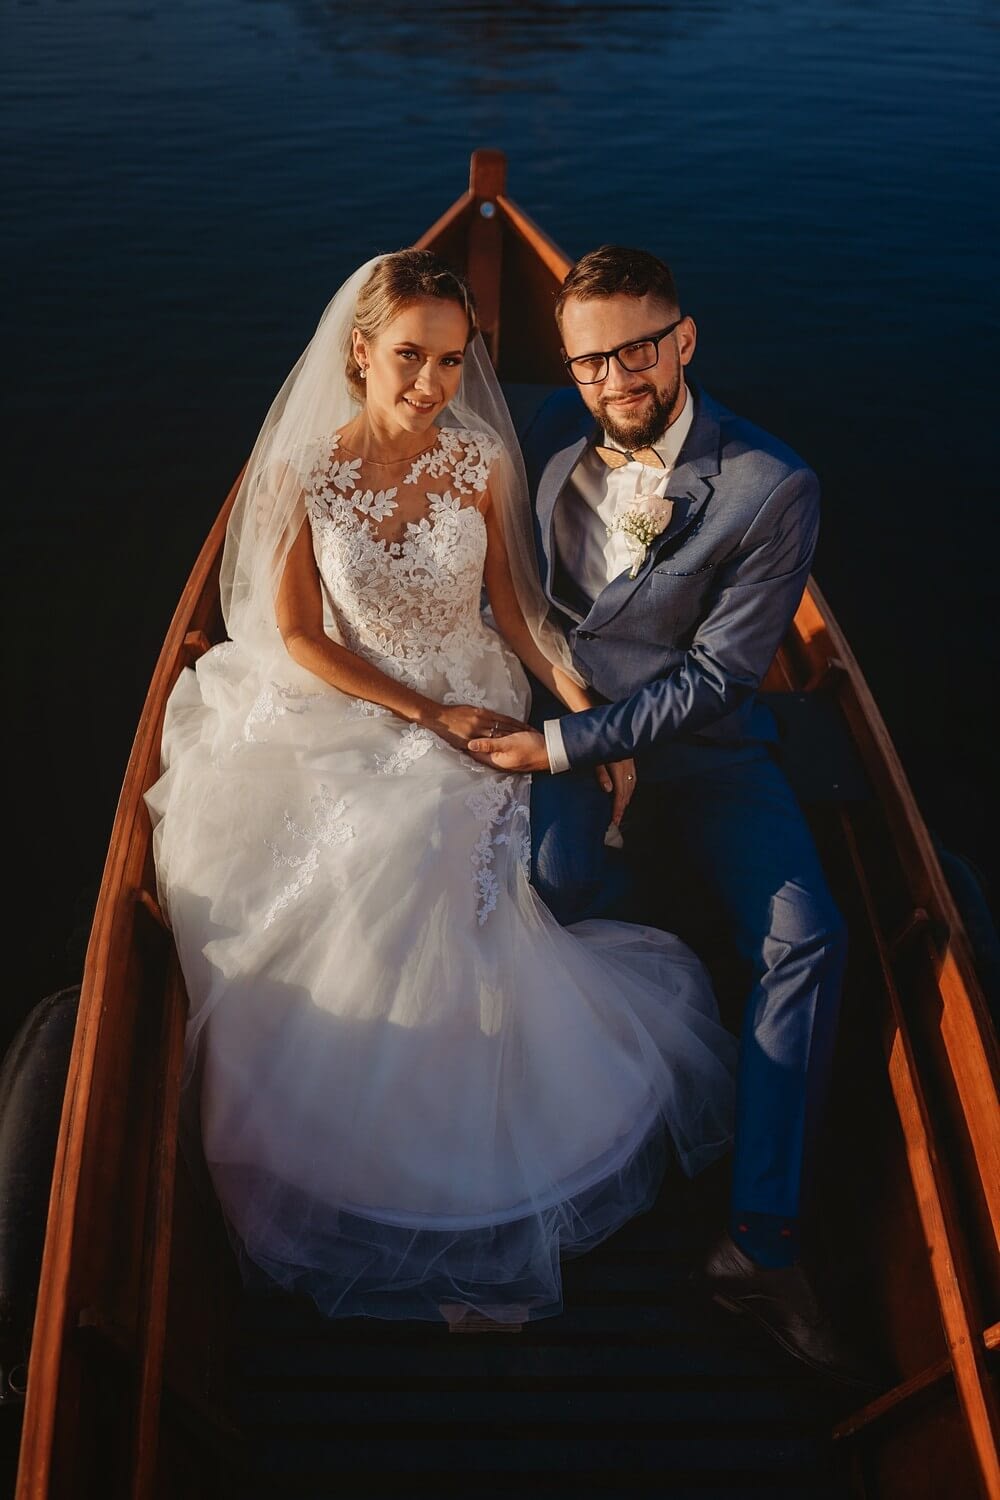 Svadobný fotograf Liptov - Fotograf Liptovský Mikuláš - Svadba na Štrbskom Plese